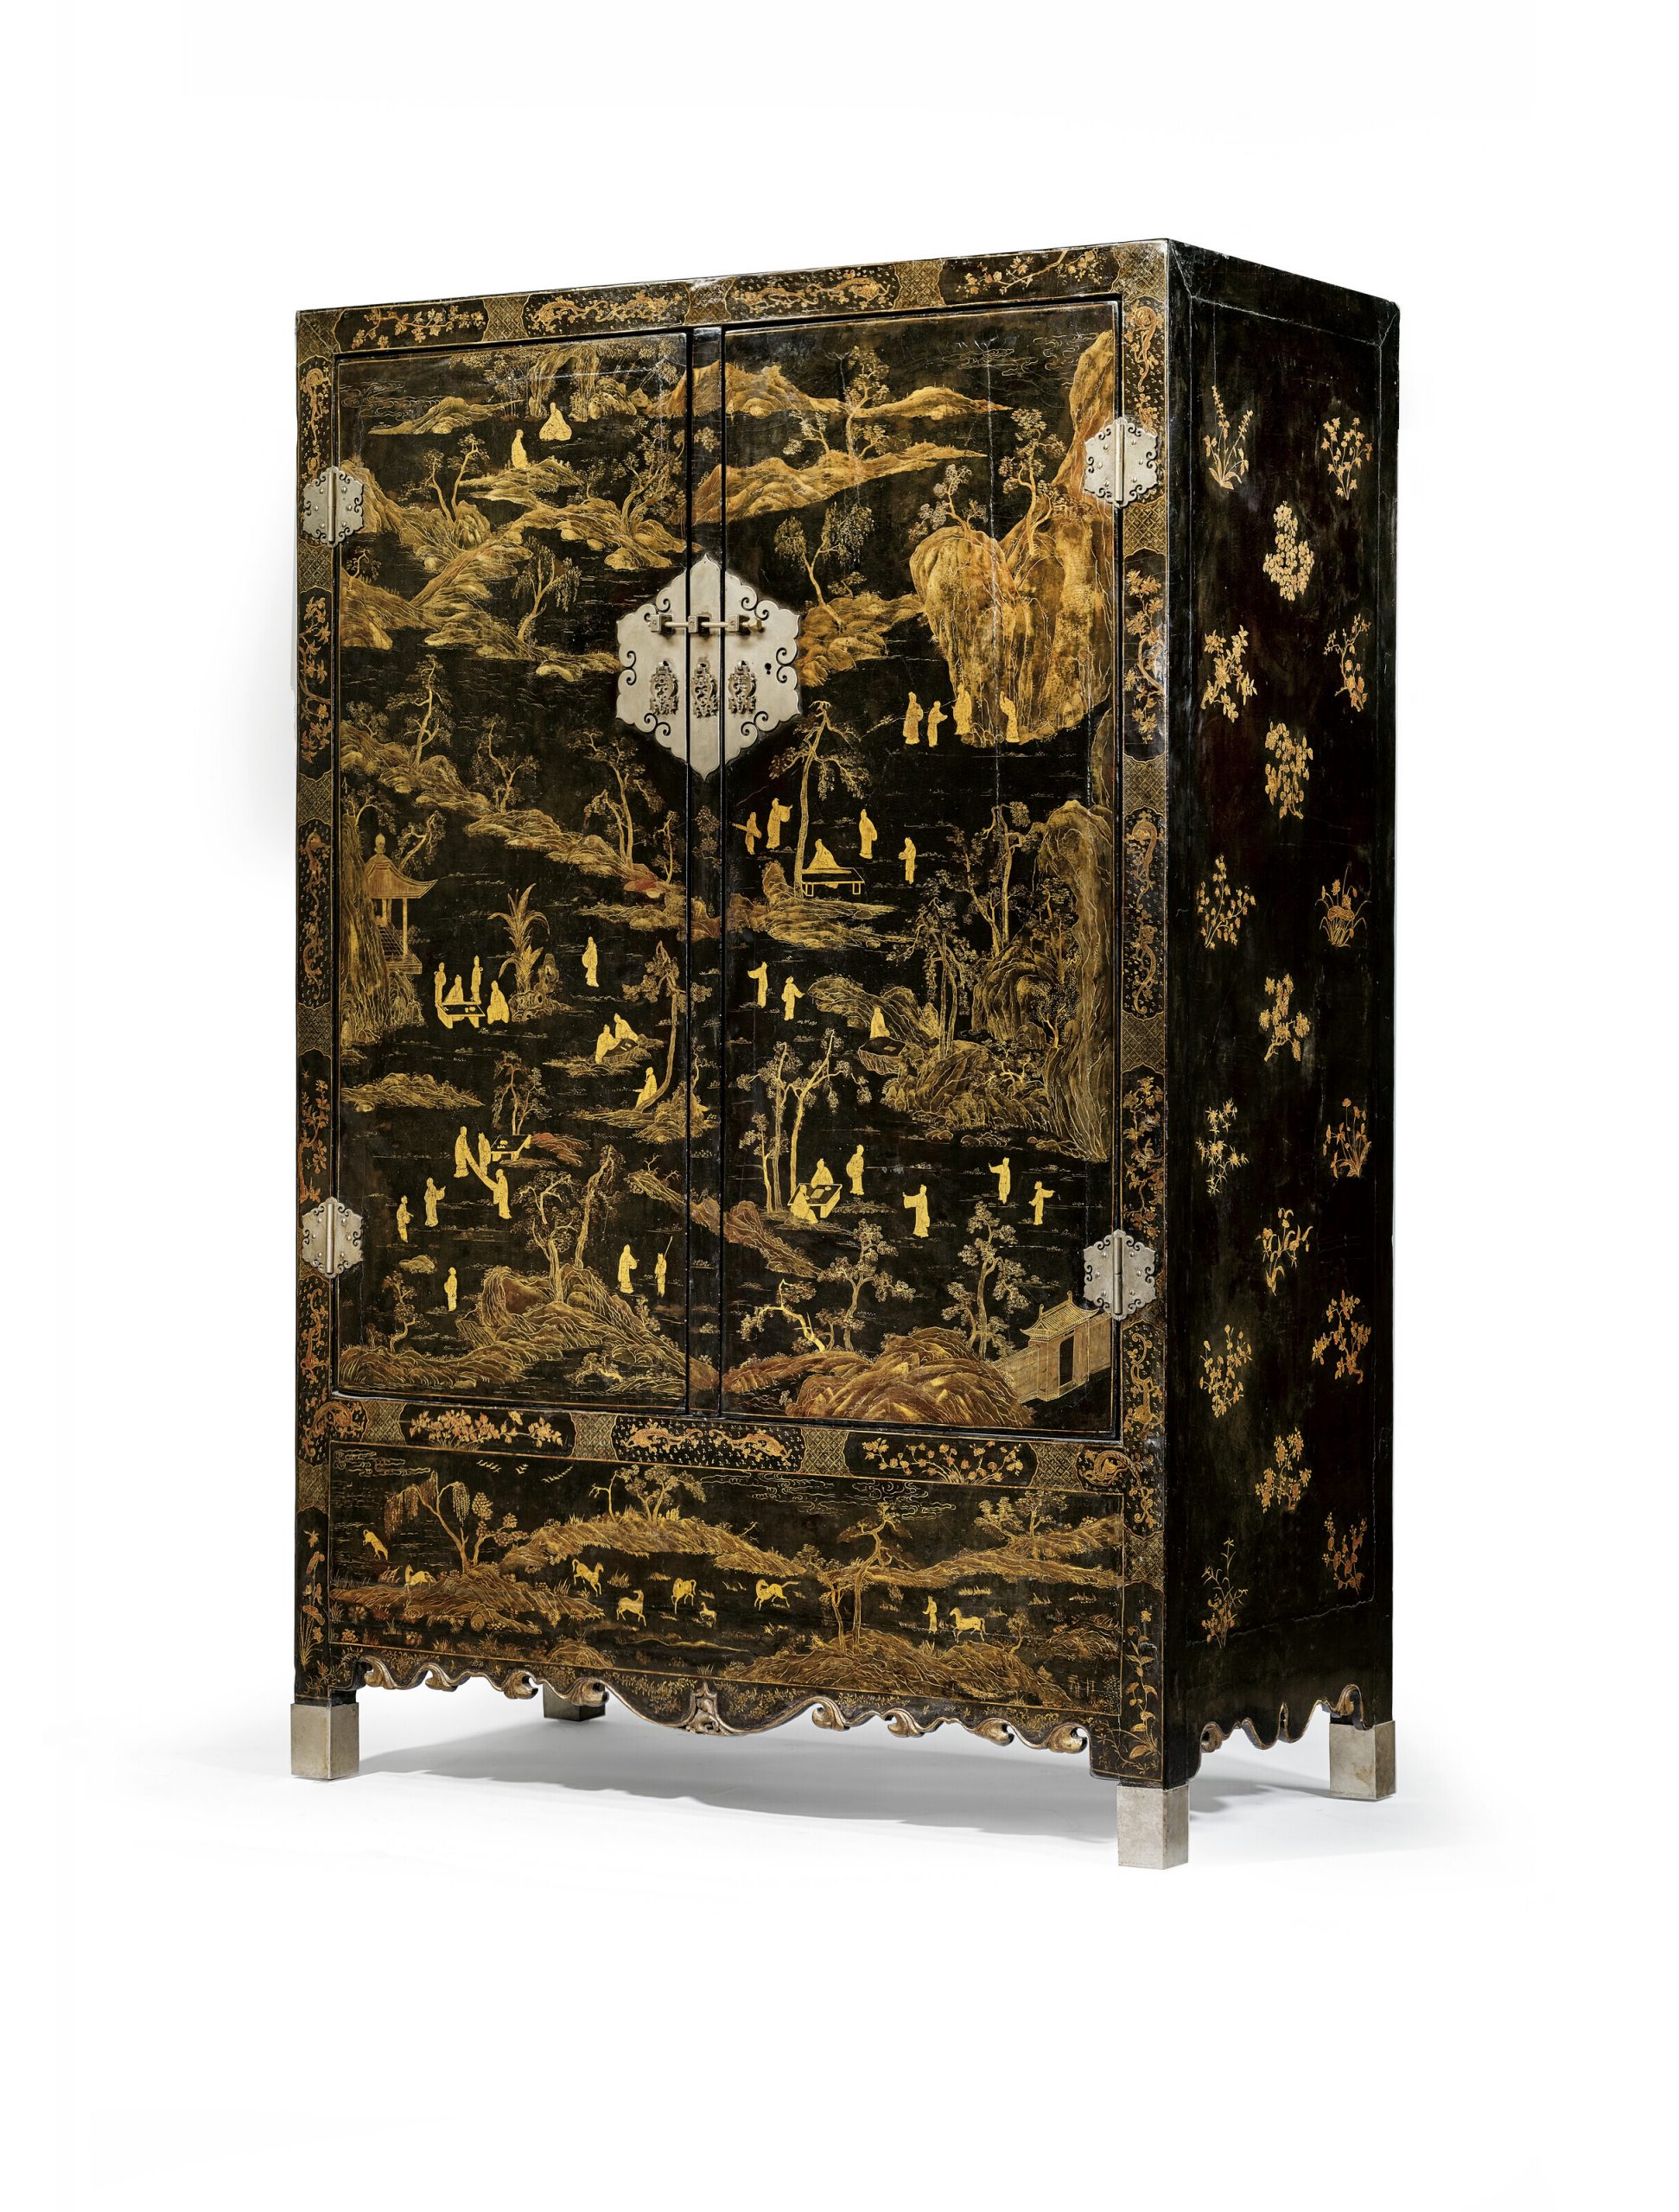 清十八世紀 黑漆描金風景人物紋大櫃